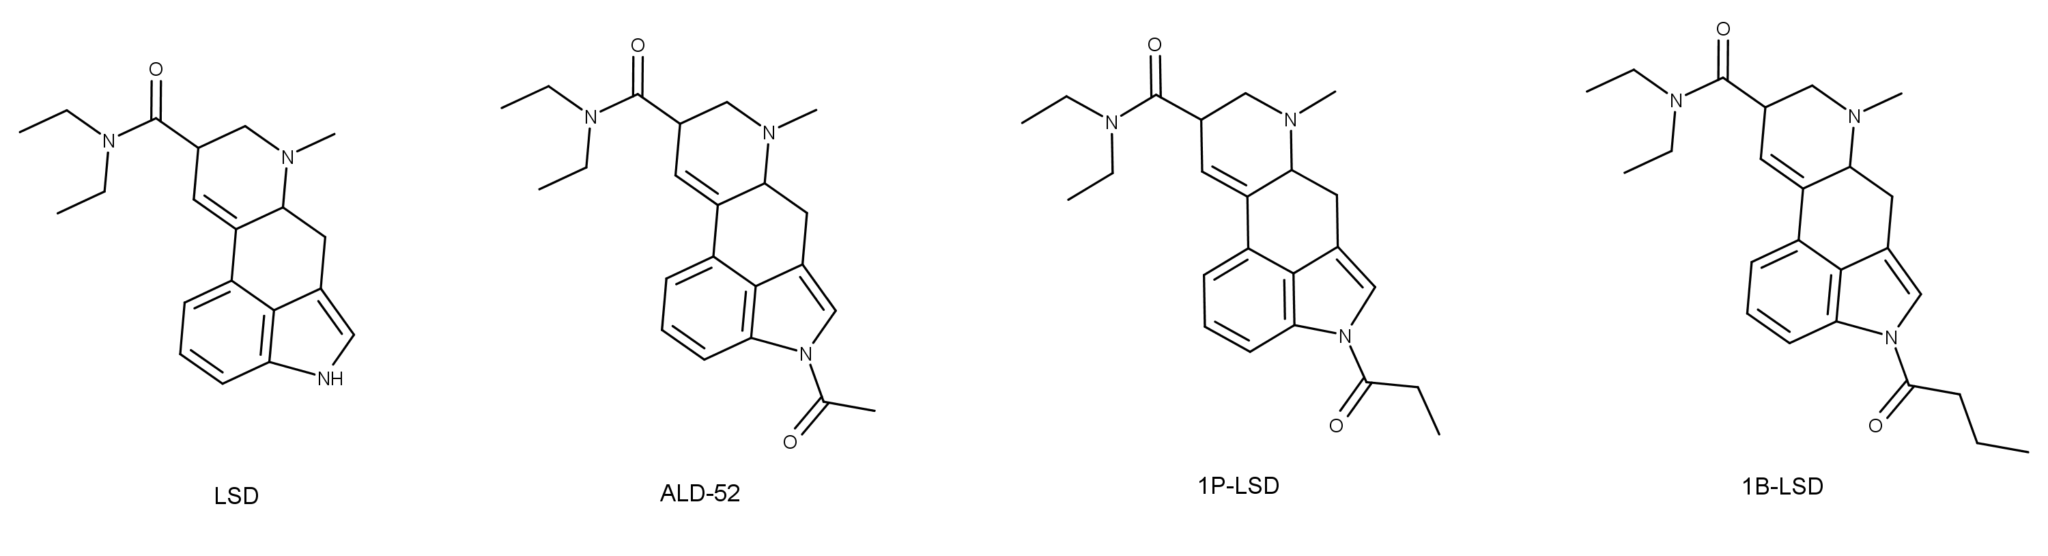 3000-LSD-ALD-52-1P-LSD-1B-LSD-2048x556.png